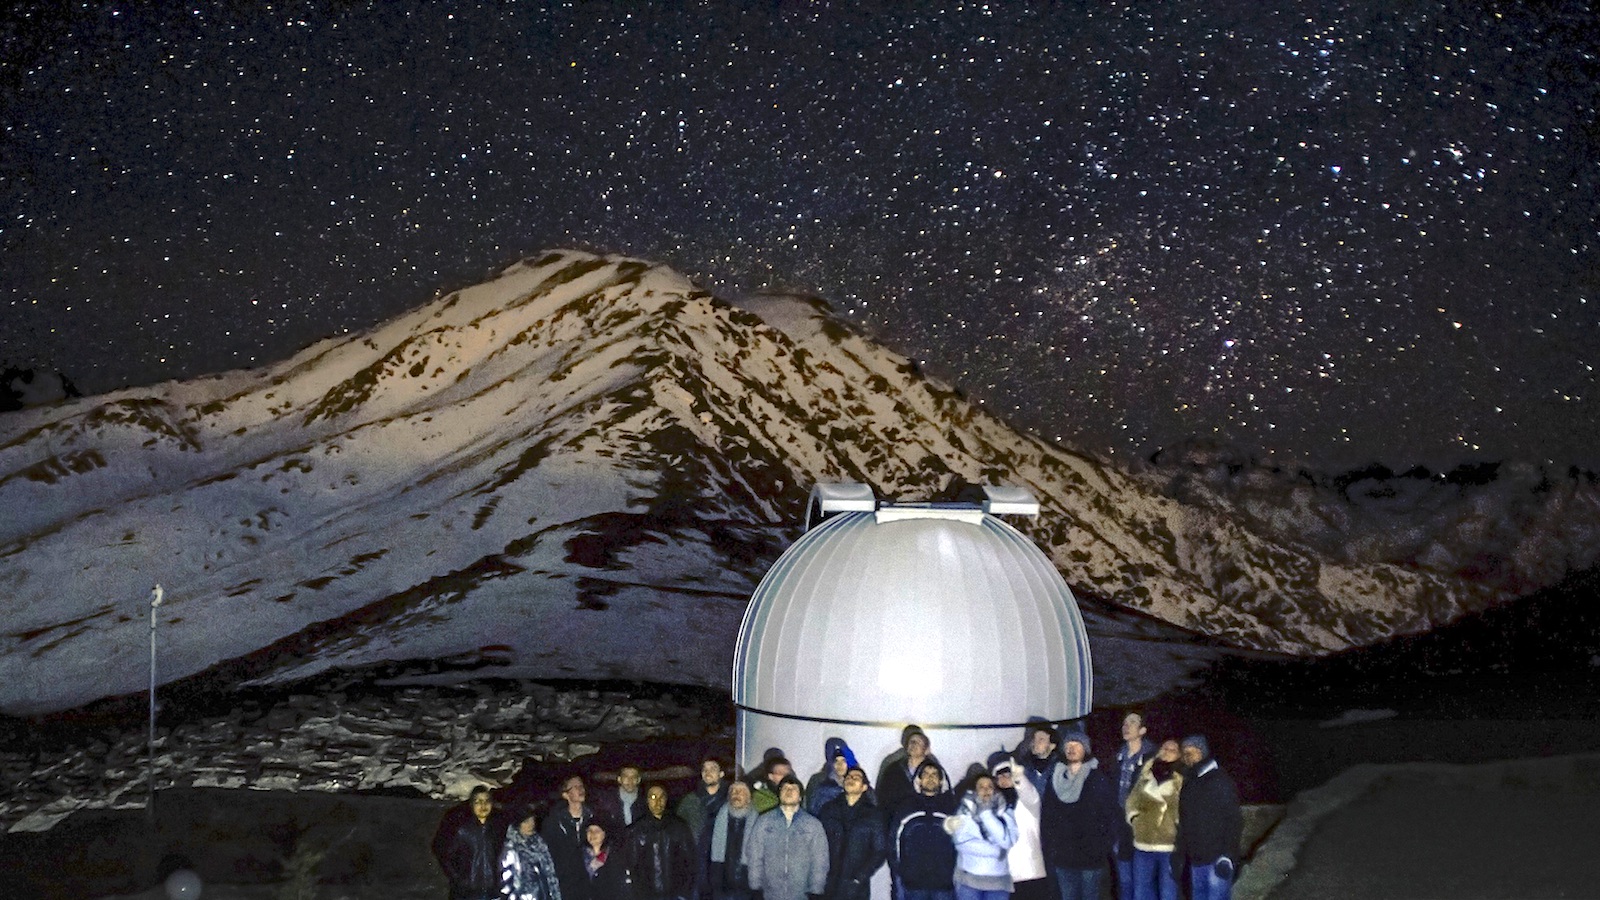 Les astronomes amateurs à l’honneur au Festival d’astronomie de Marrakech